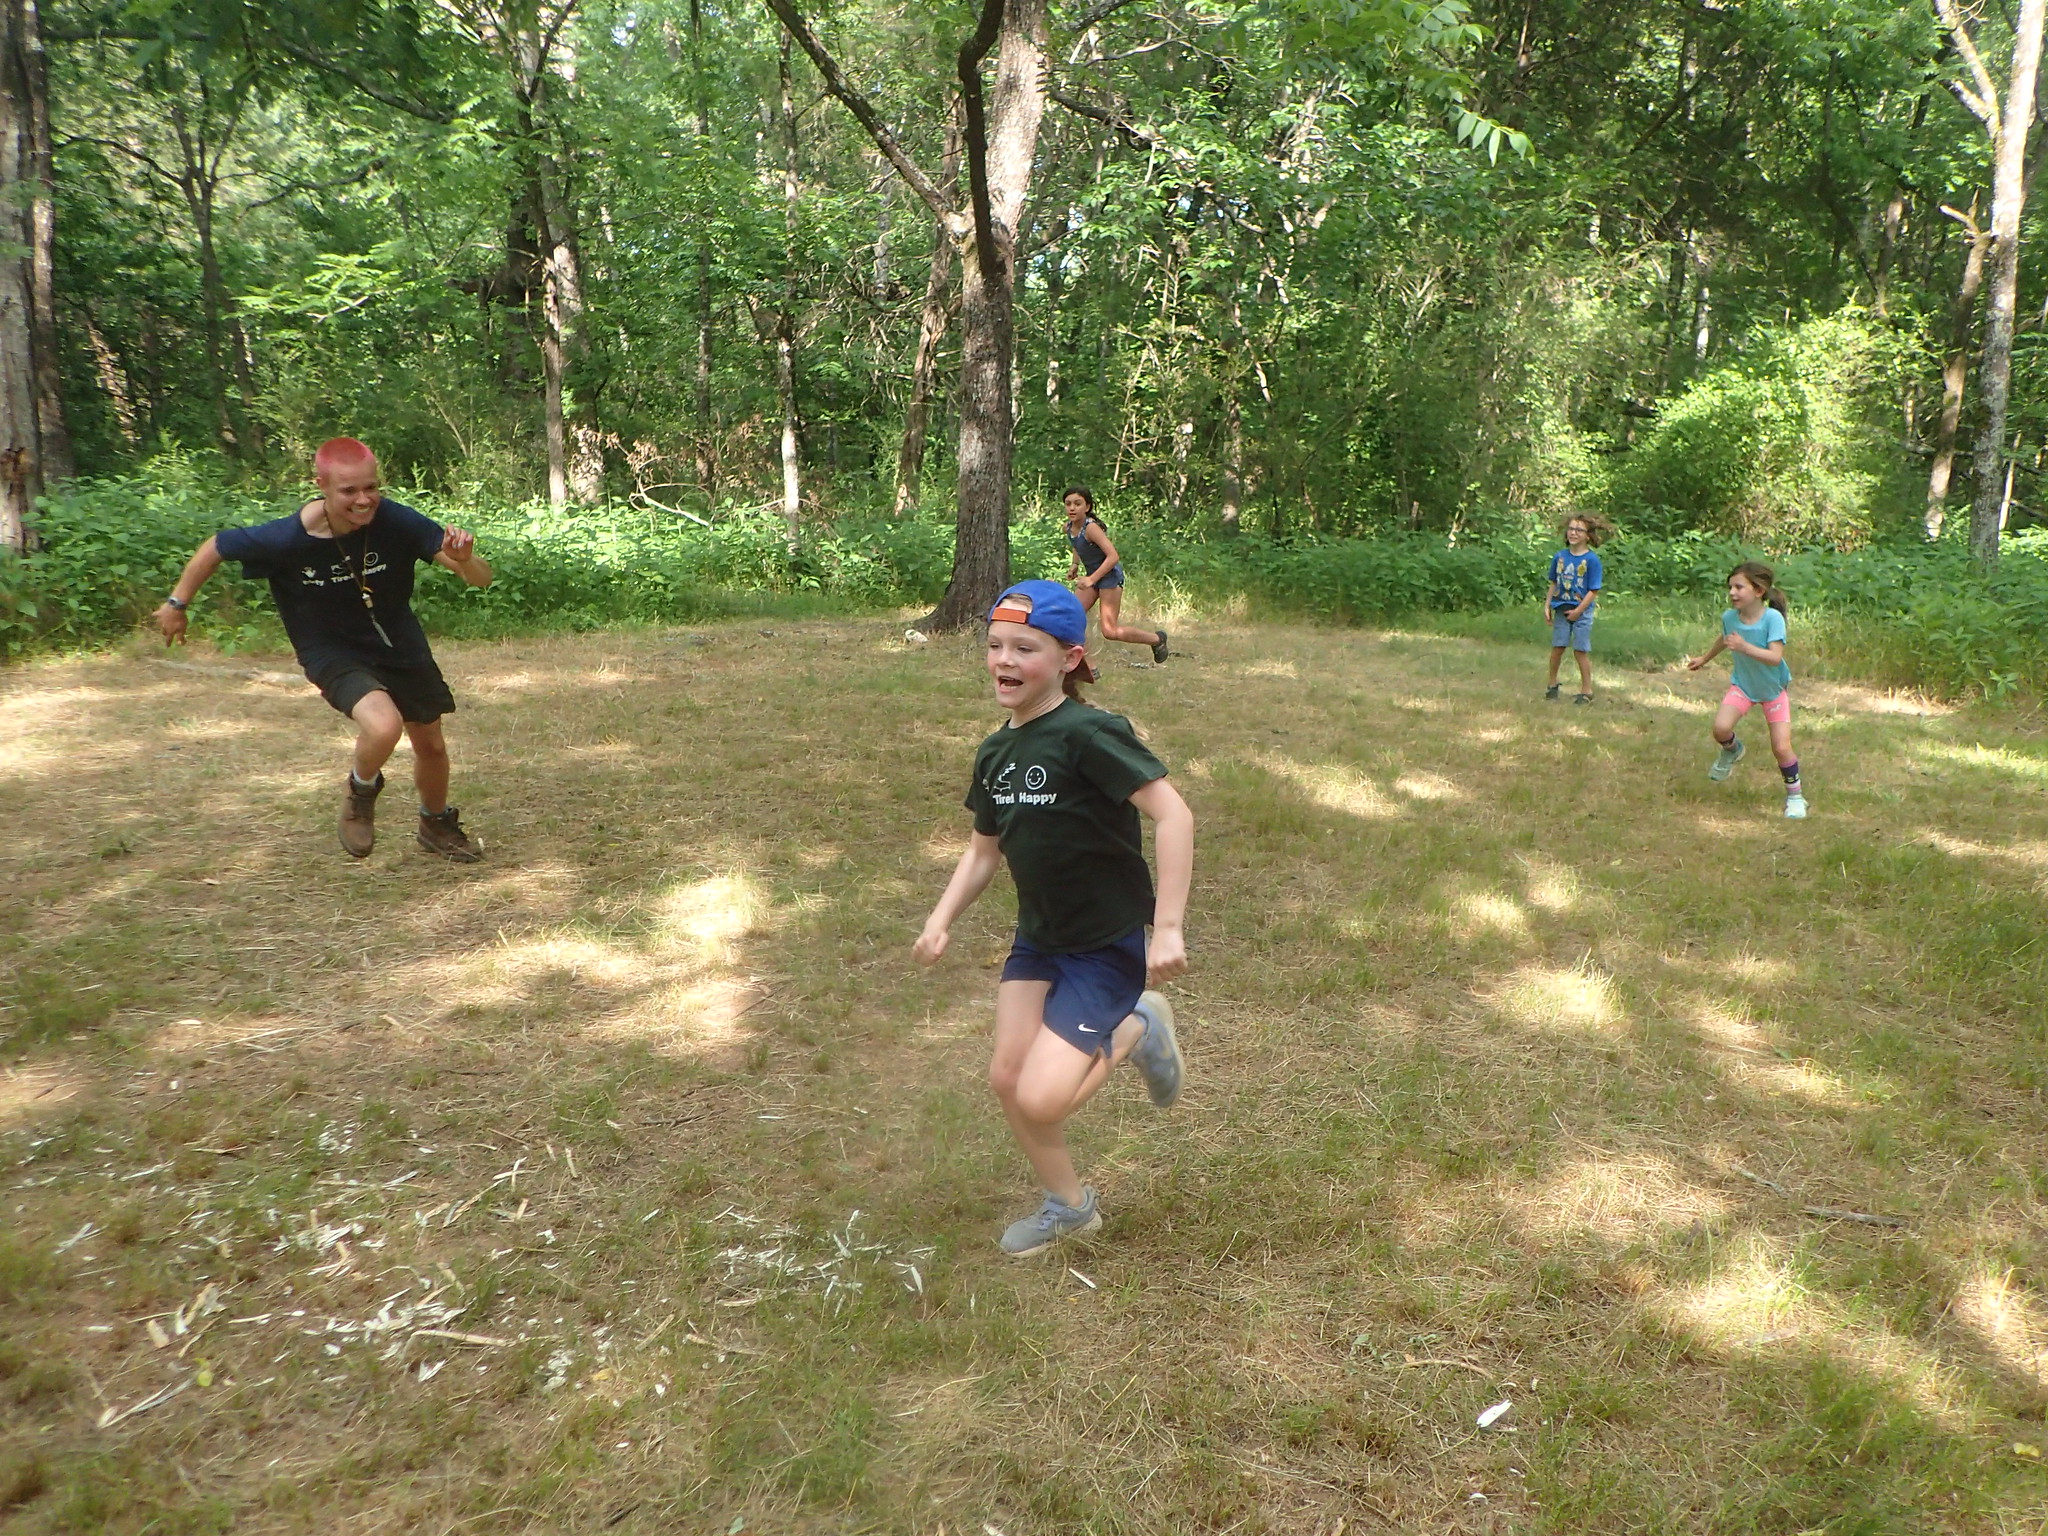 Kids running in field